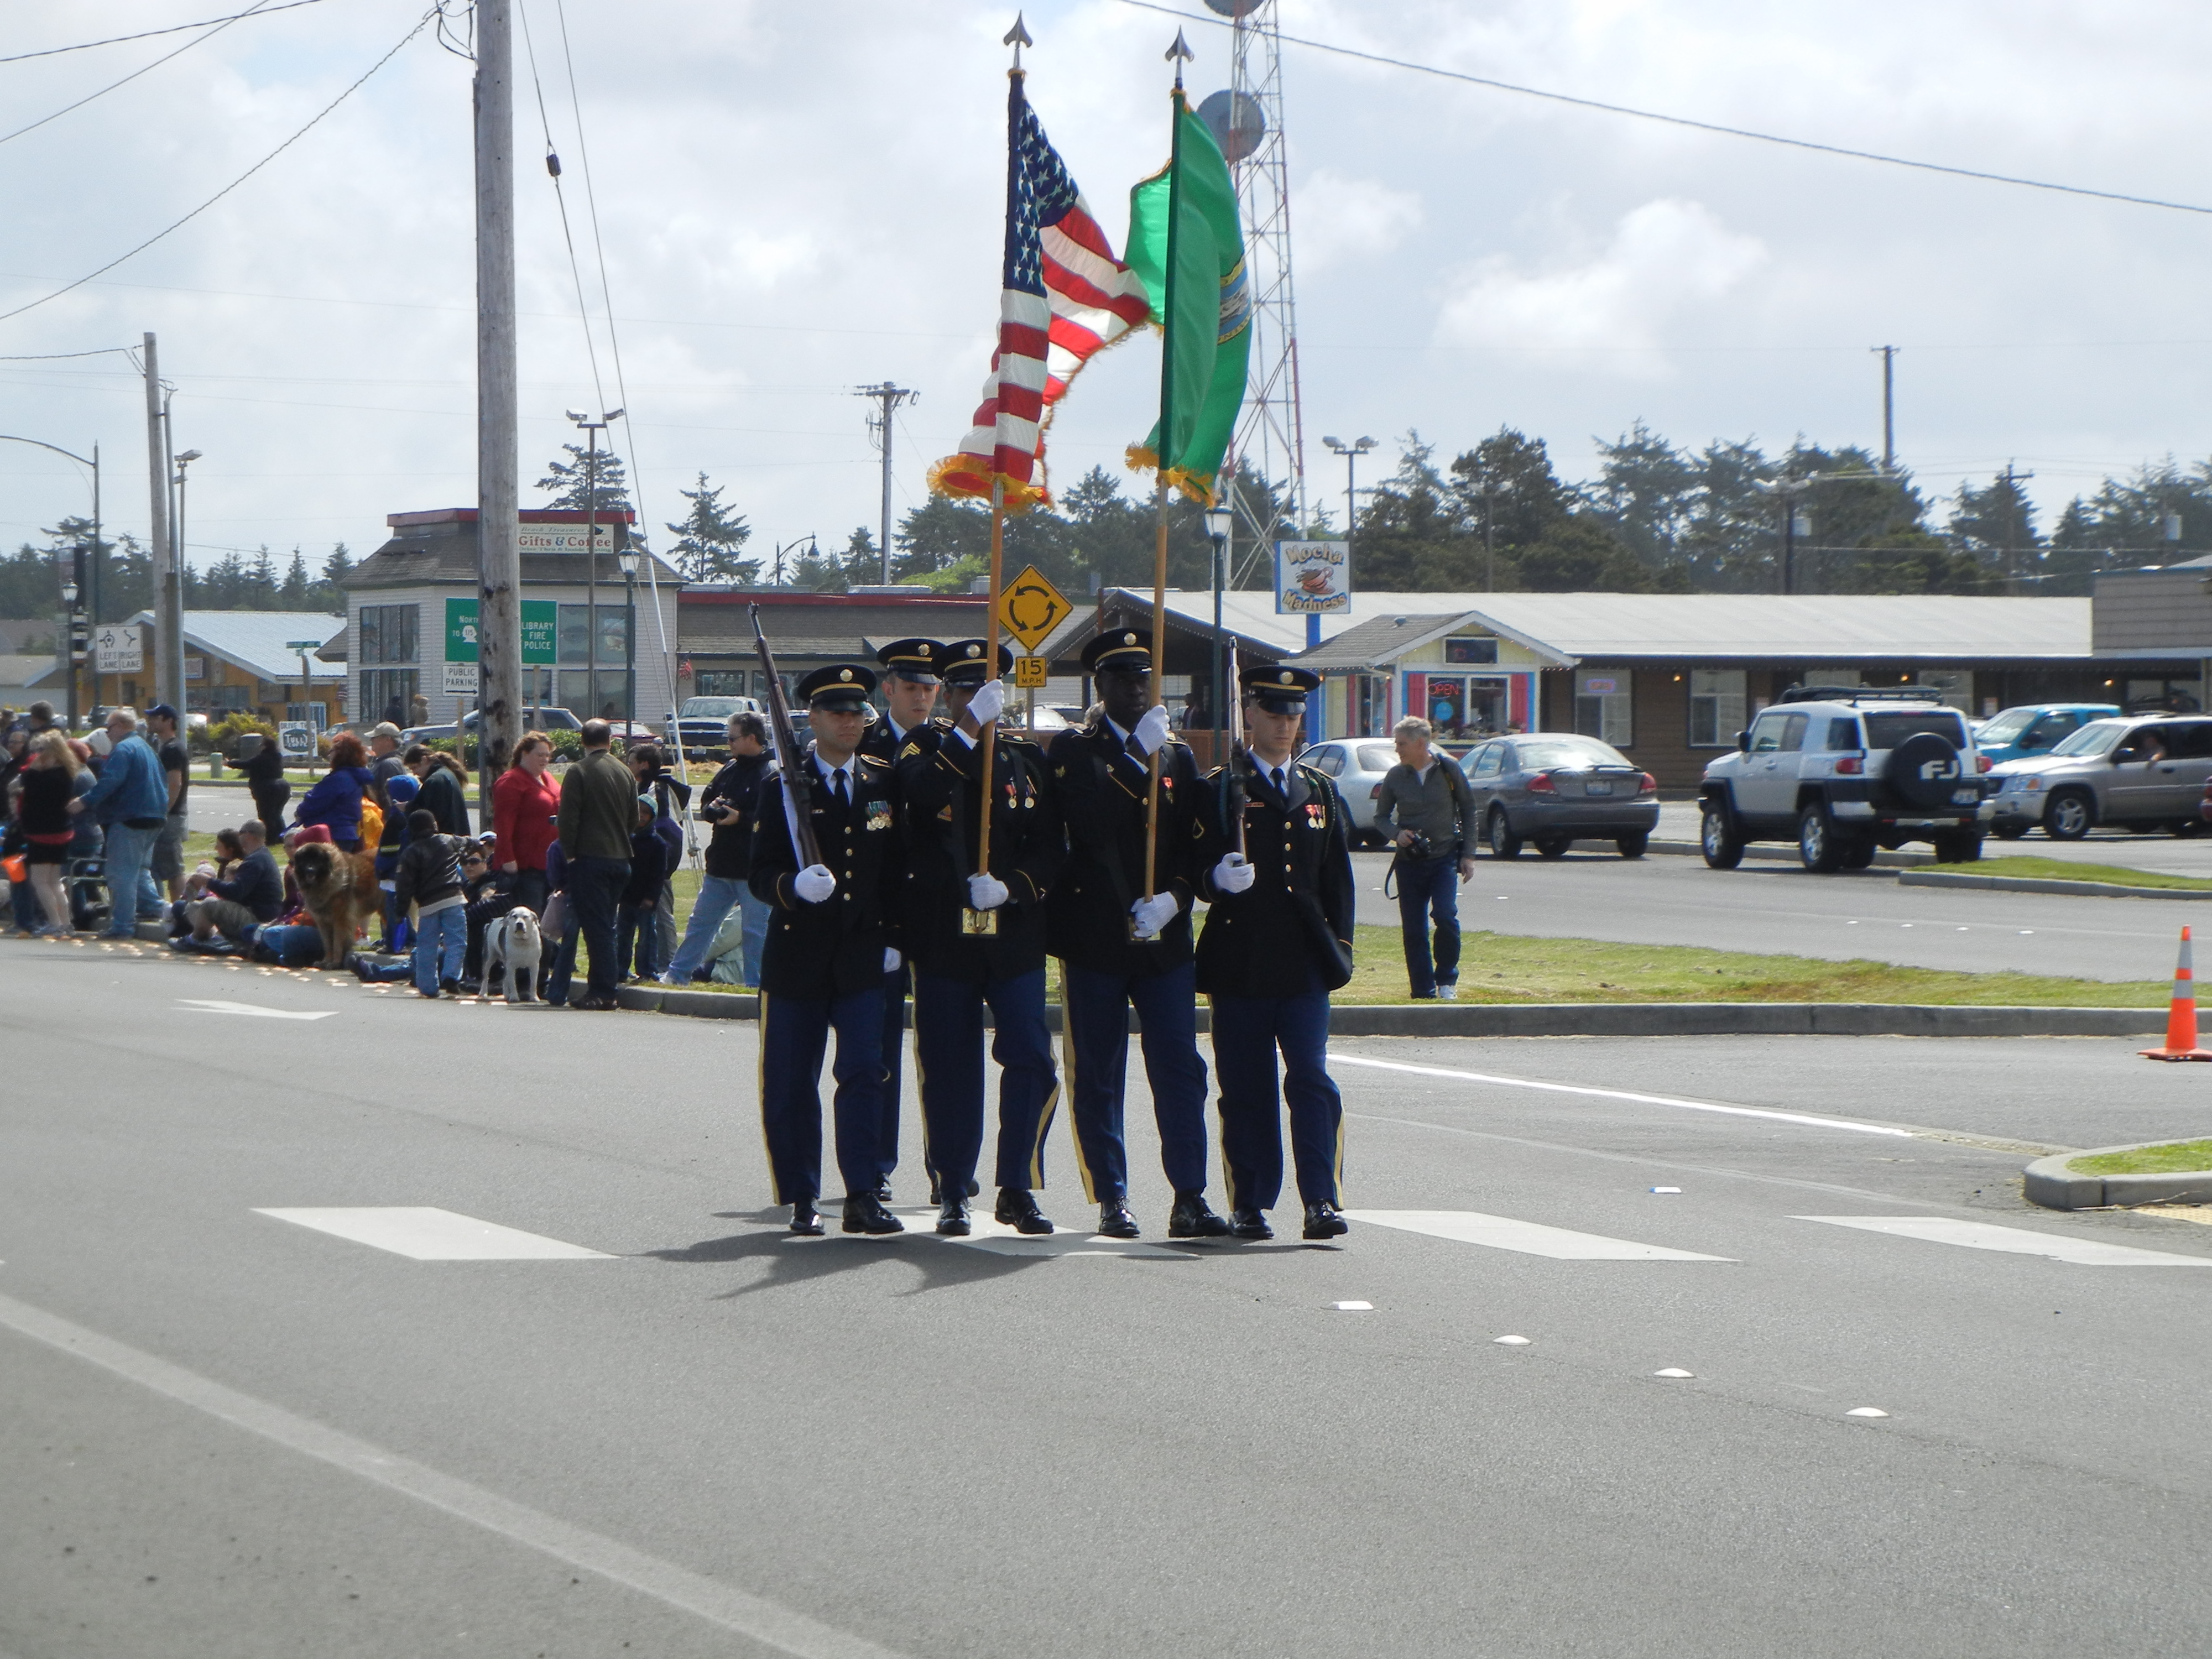 Flag Day parade in Ocean Shores